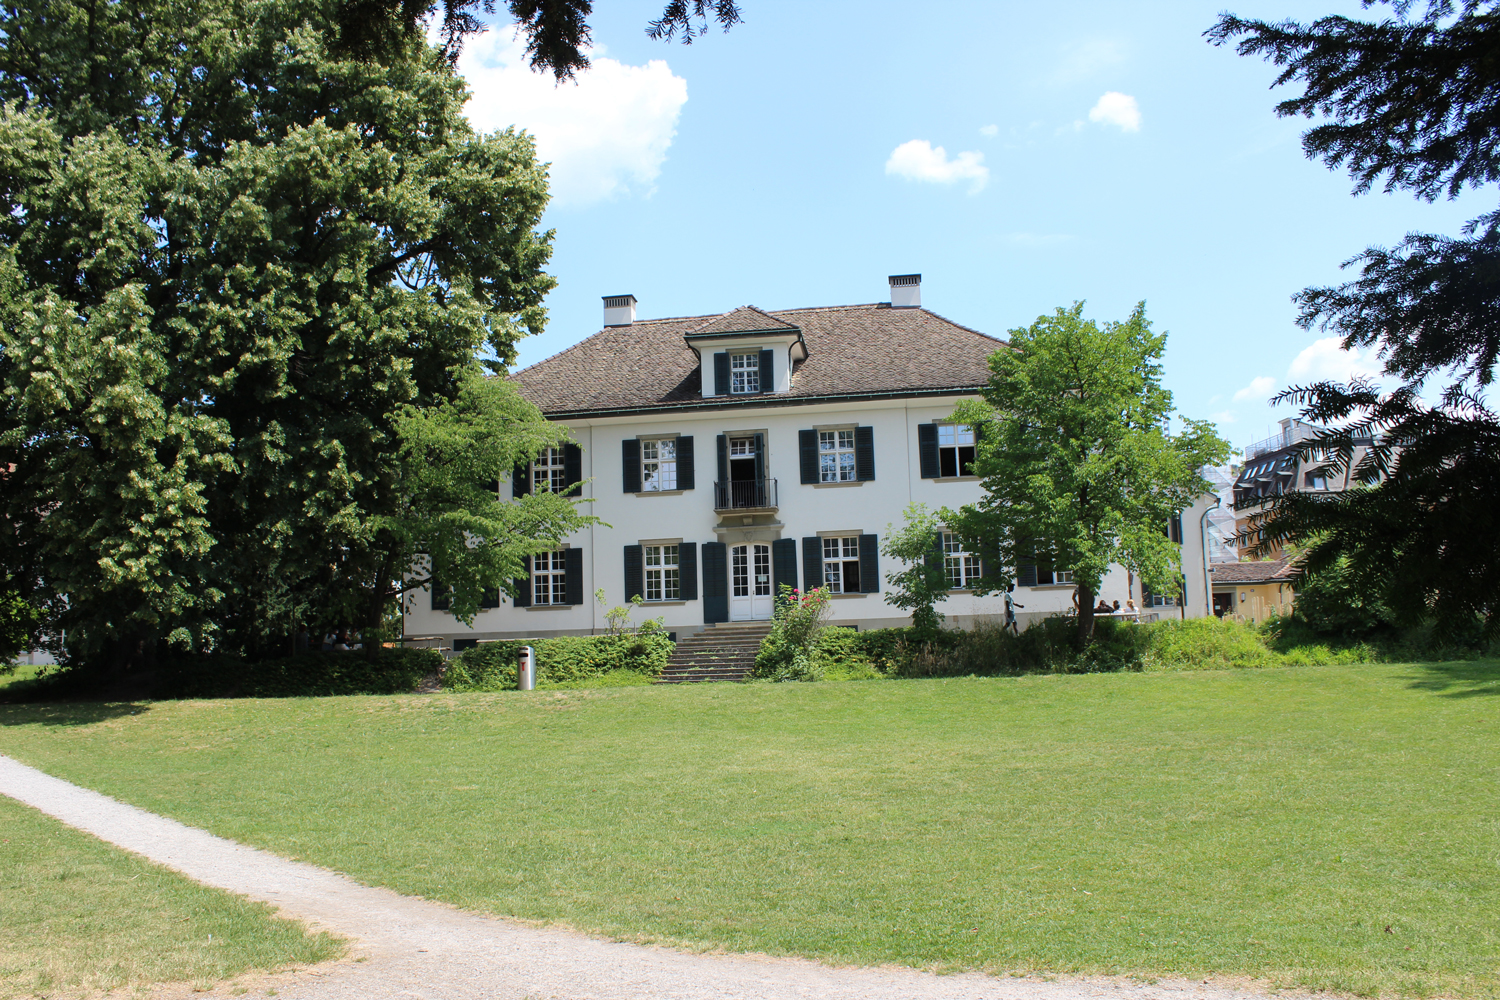 Das Bild zeigt das Herrenhaus Beckenhof mit einer grünen Wiese und grossen Bäumen. 